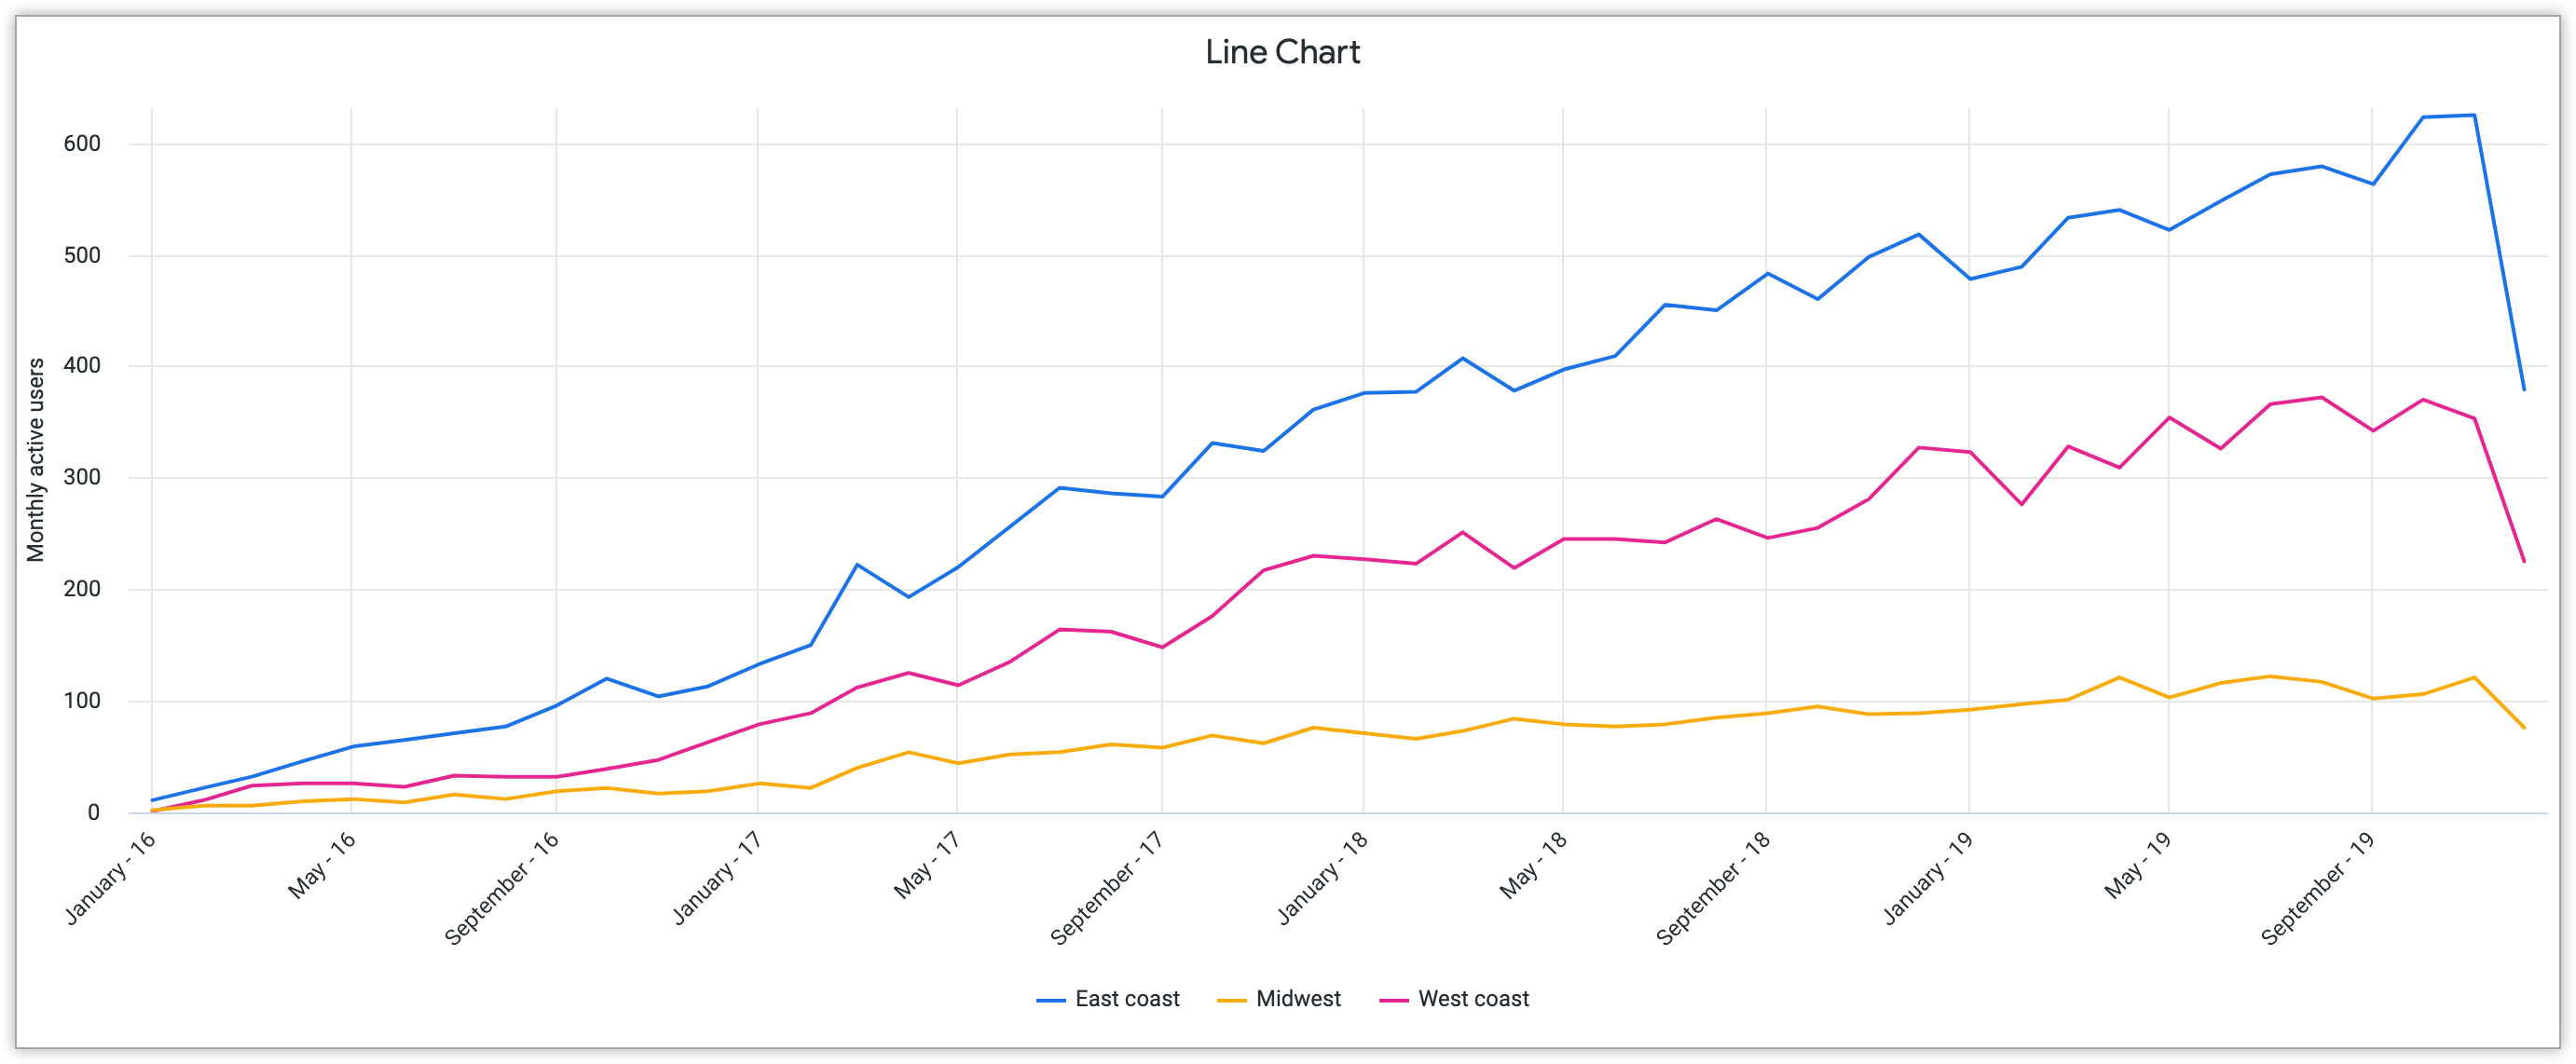 東海岸、中西部、西海岸を示す 3 本線のグラフ。Y 軸は 1 か月のアクティブ ユーザー数、X 軸は 2016 年から 2018 年の月間データ。